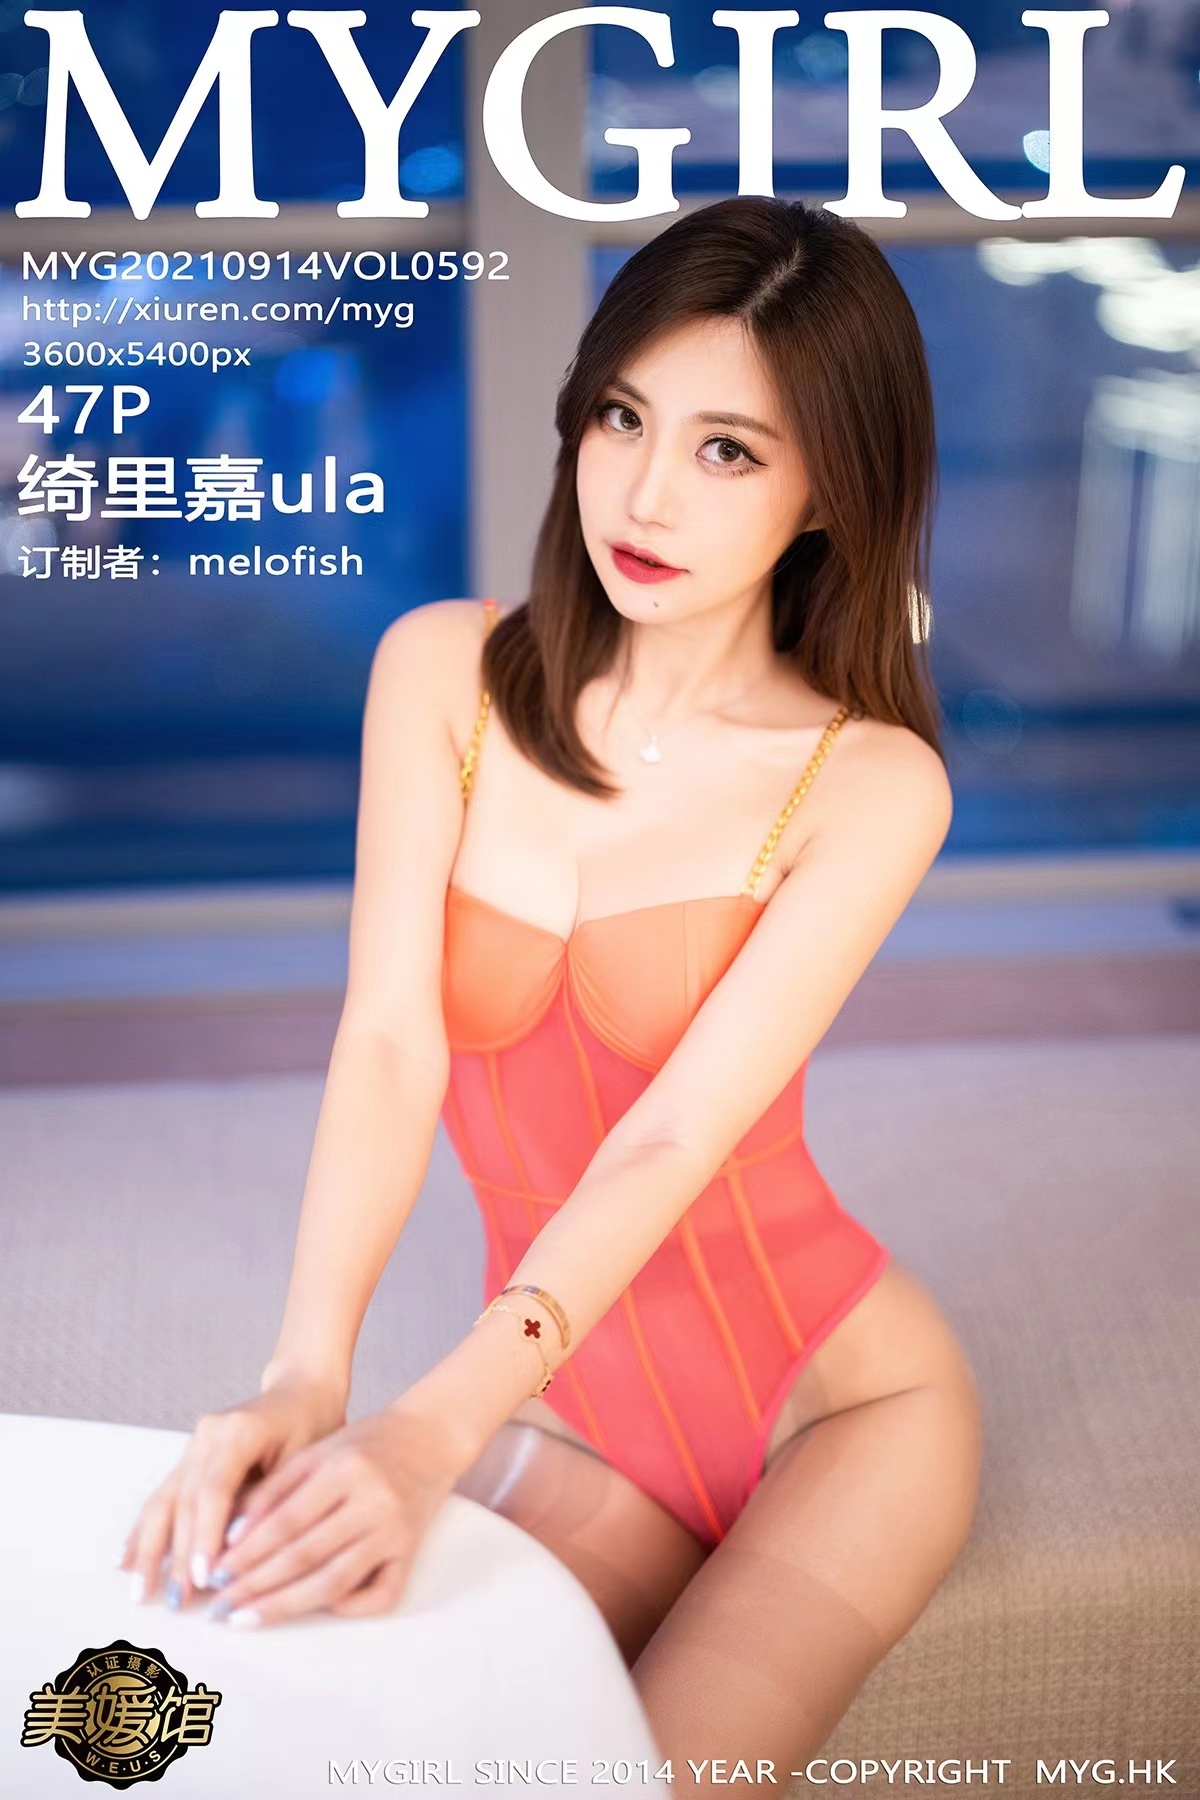 MyGirl beauty yuan pavilion 2021.09.14 Vol.592 Qili jia ula